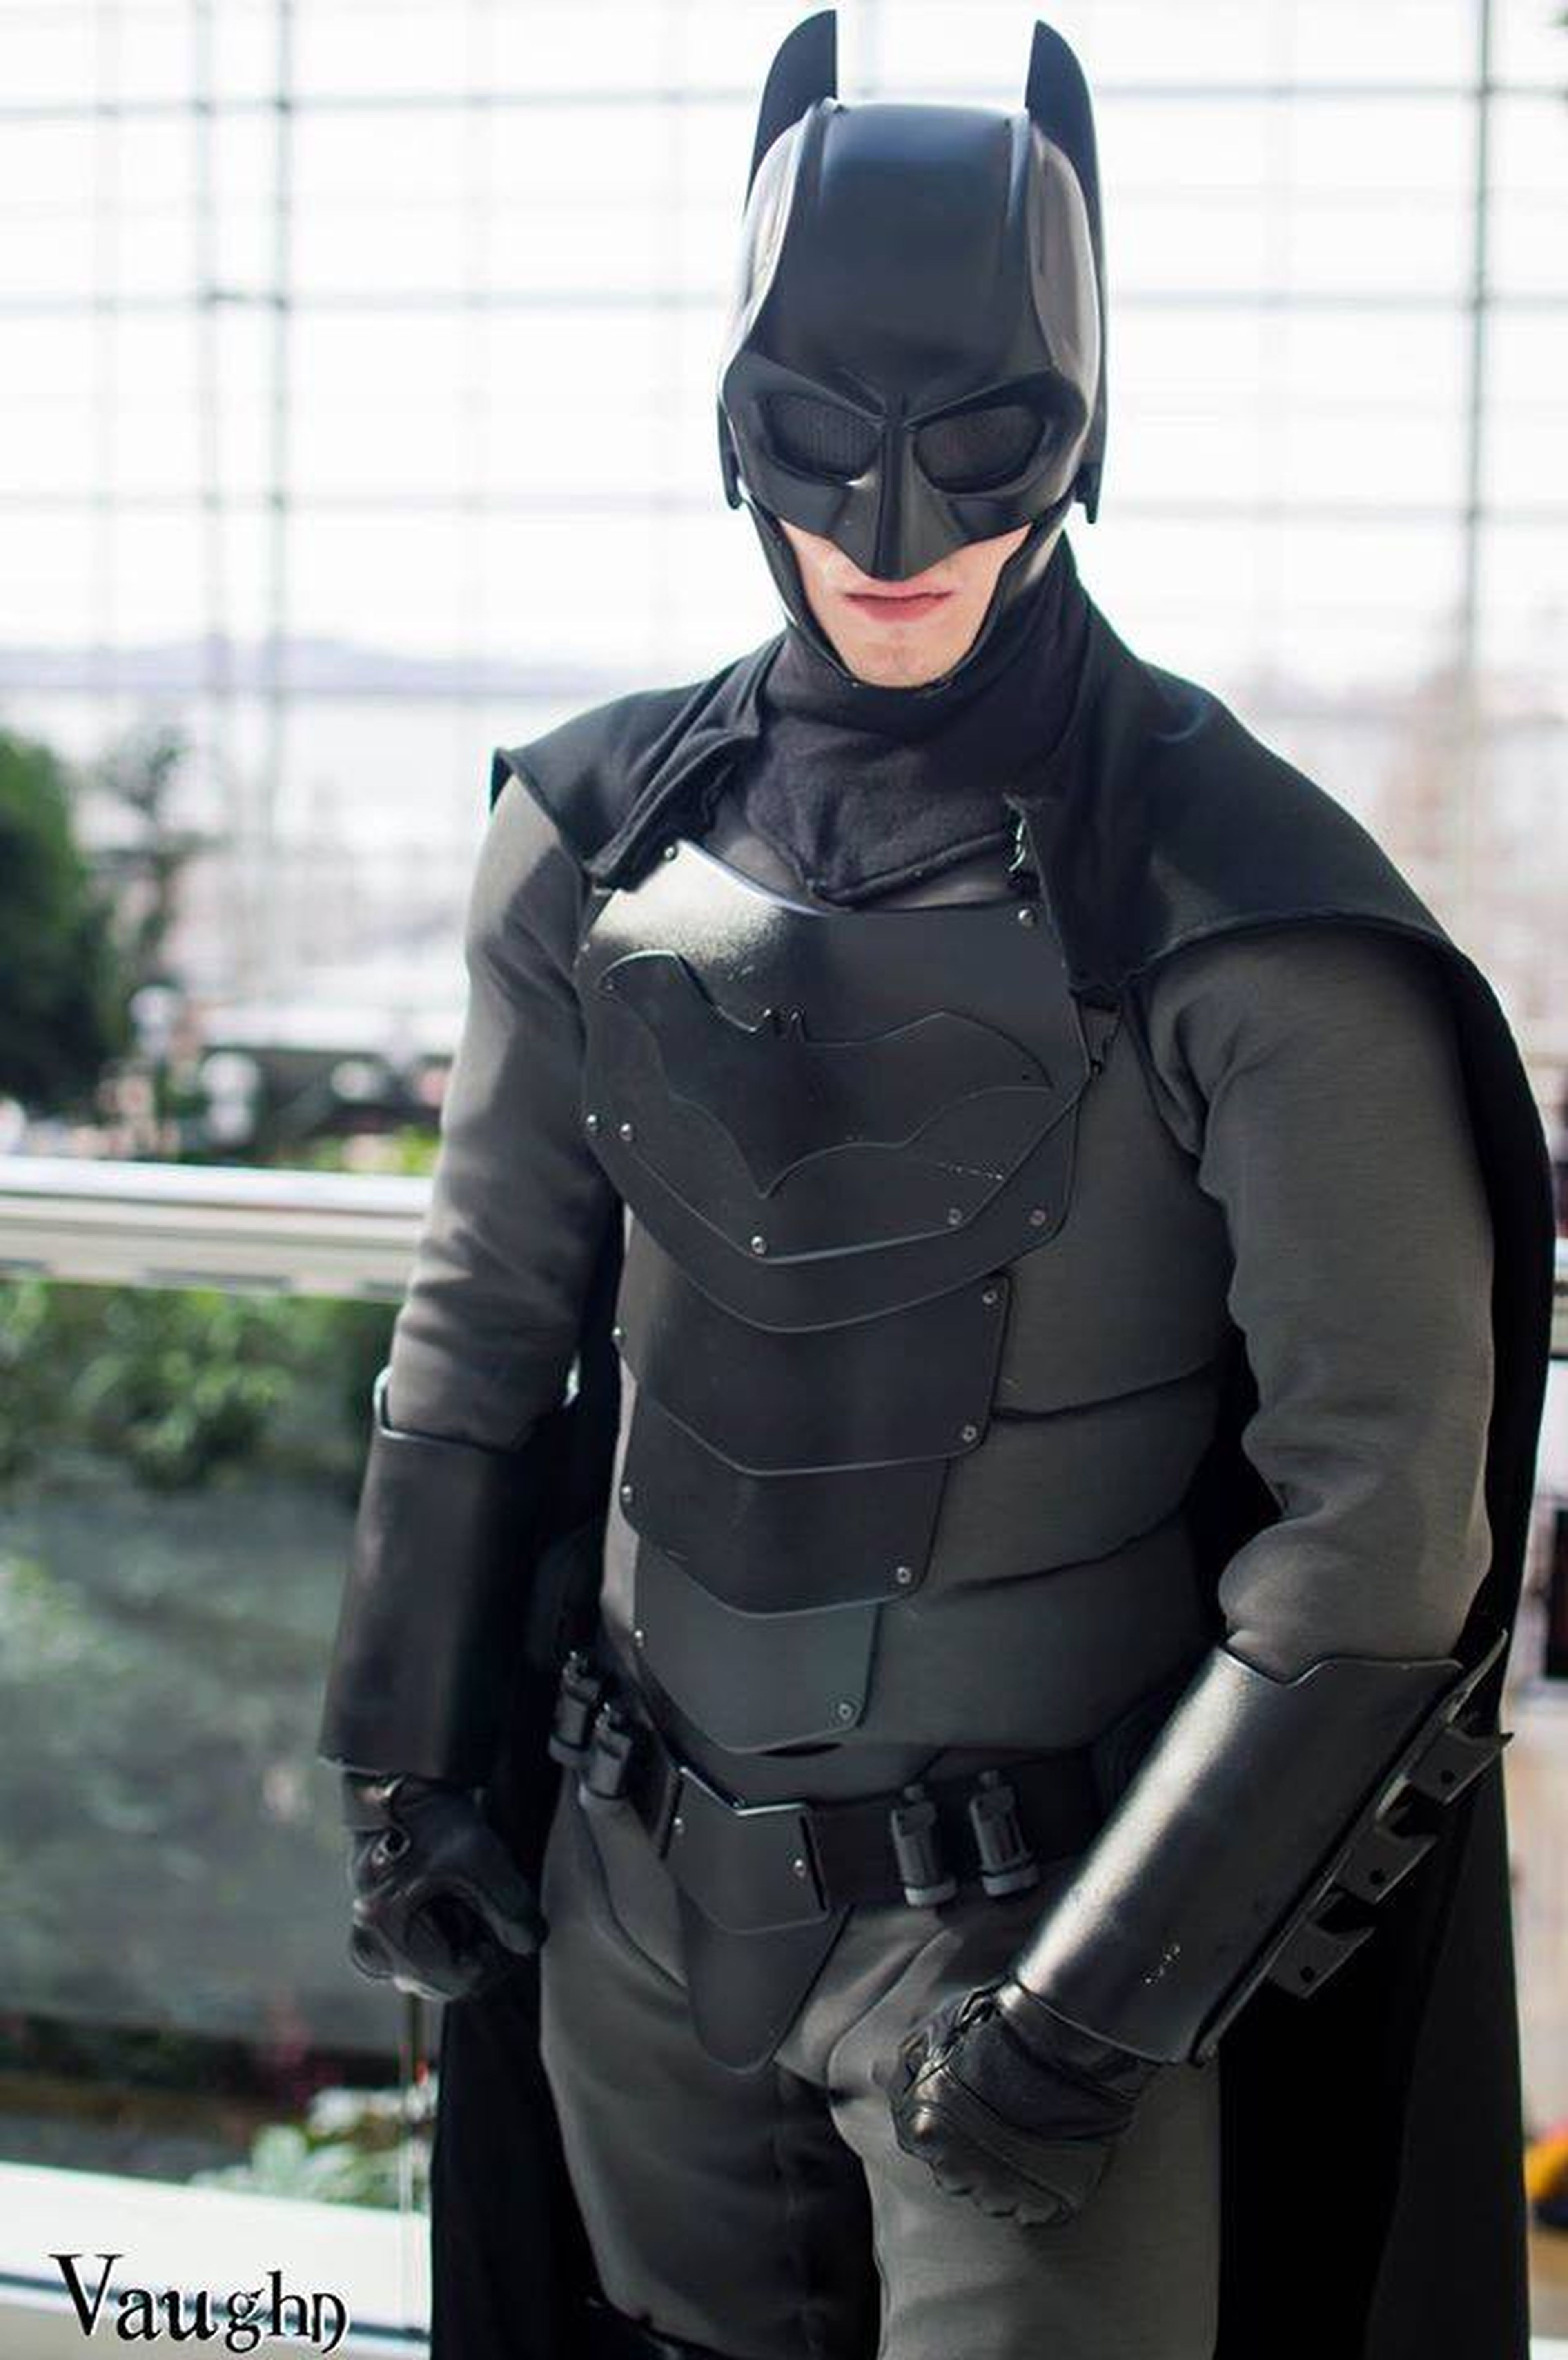 Crean un traje de Batman funcional y real